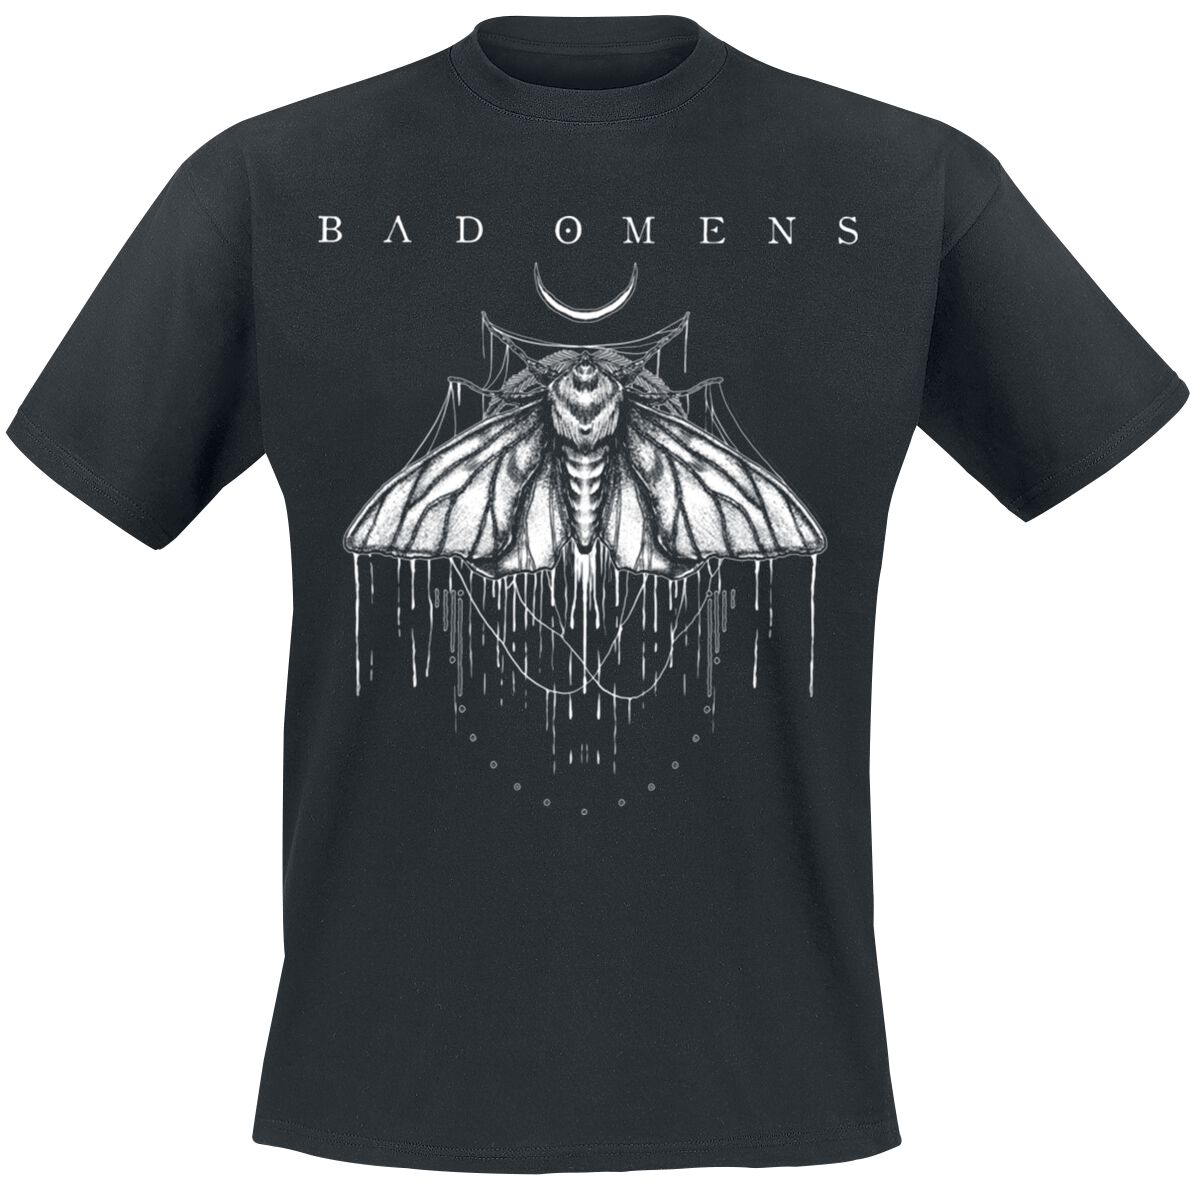 Bad Omens T-Shirt - Moth - M bis 4XL - für Männer - Größe 4XL - schwarz  - Lizenziertes Merchandise!